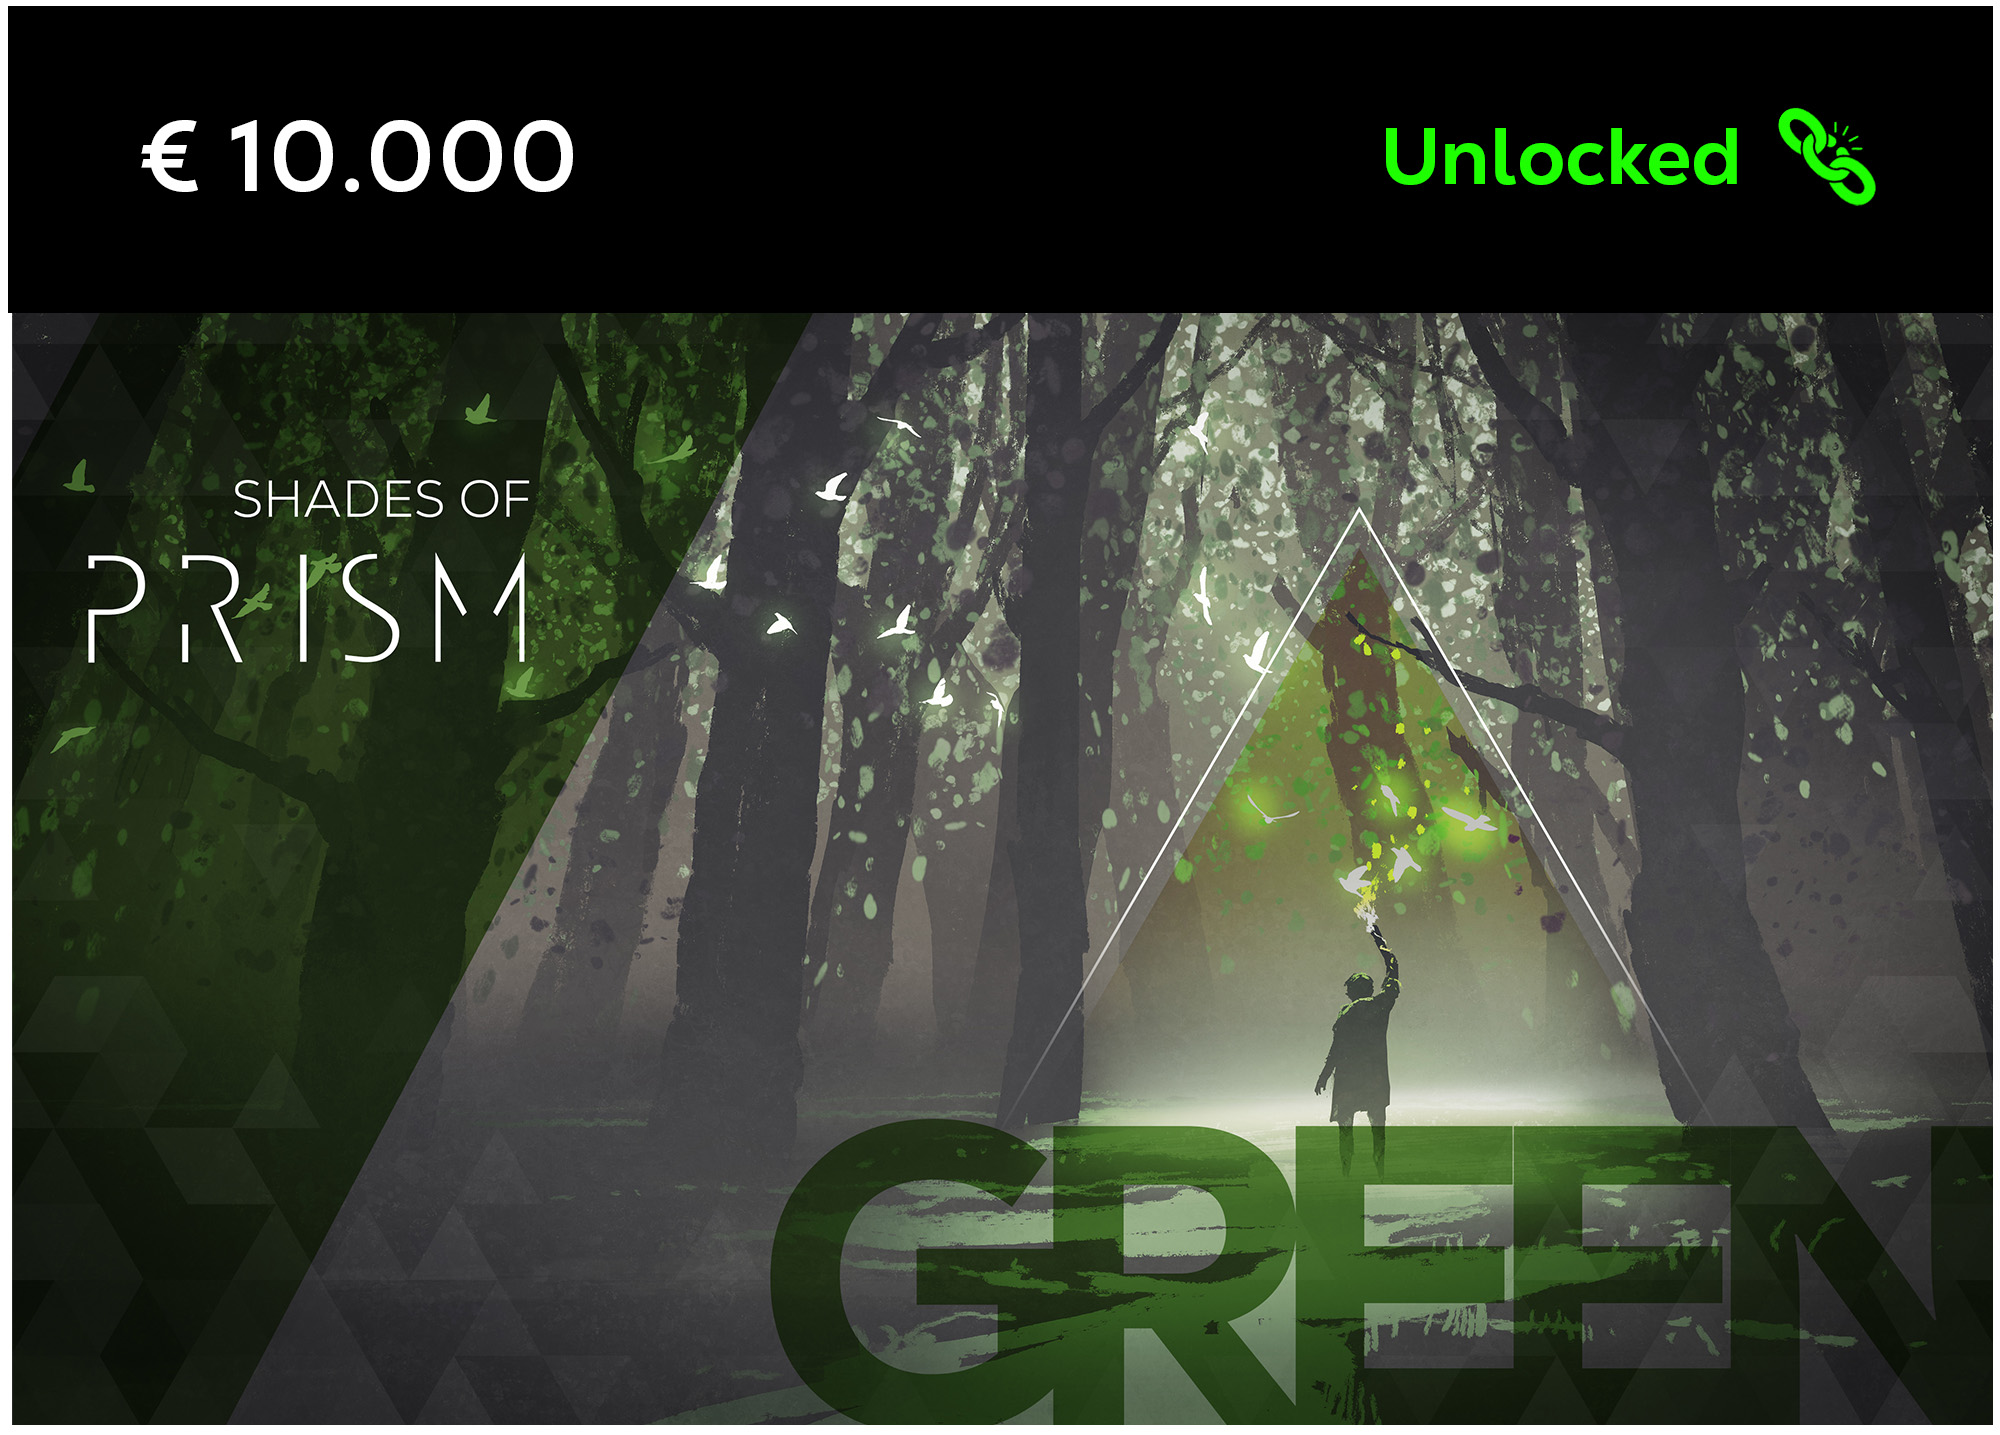 Green - unlocked